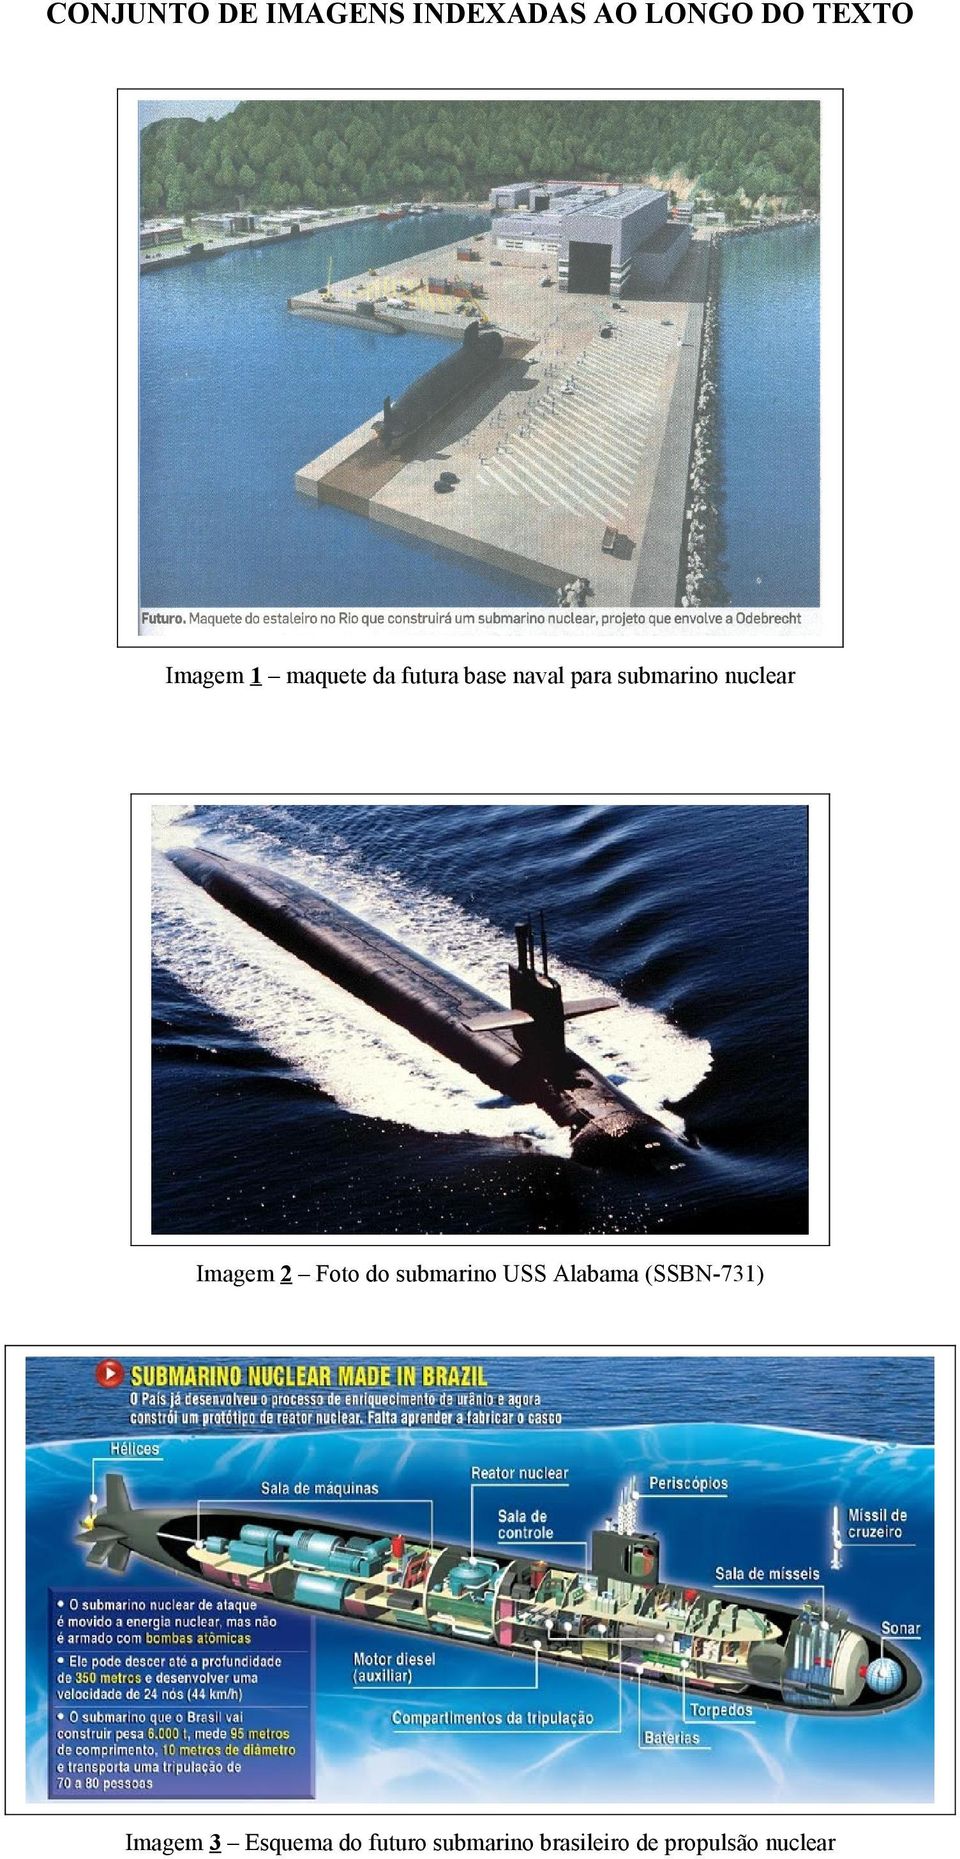 Imagem 2 Foto do submarino USS Alabama (SSBN-731) Imagem